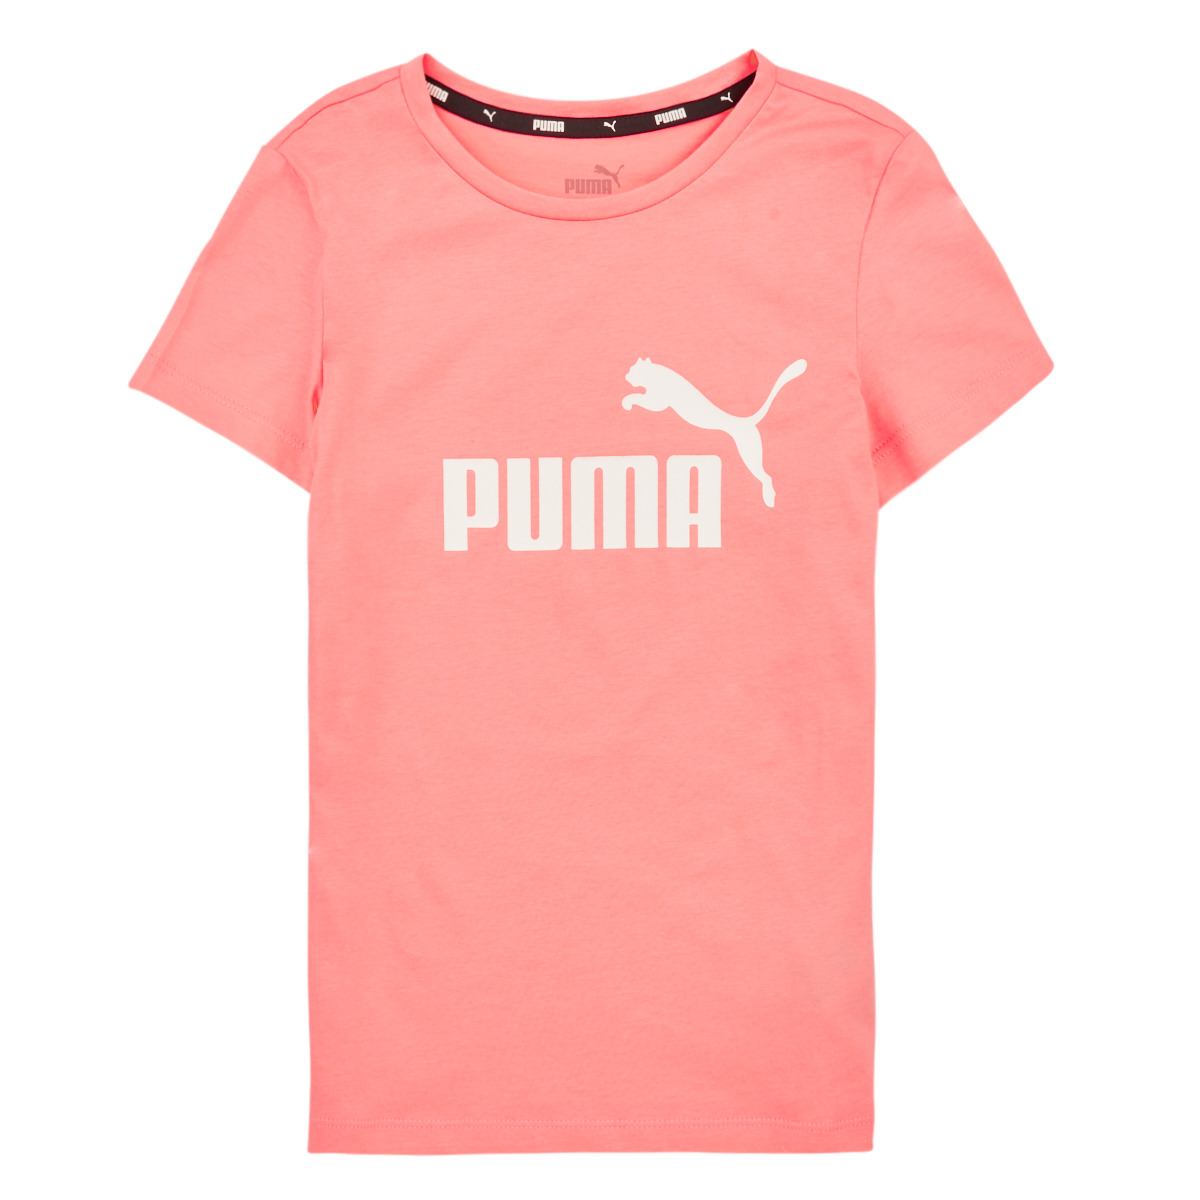 Vêtements Fille el producto Puma Future Runner EU 40 1 2 Charcoal Grey Puma Black ESS LOGO TEE G Rose